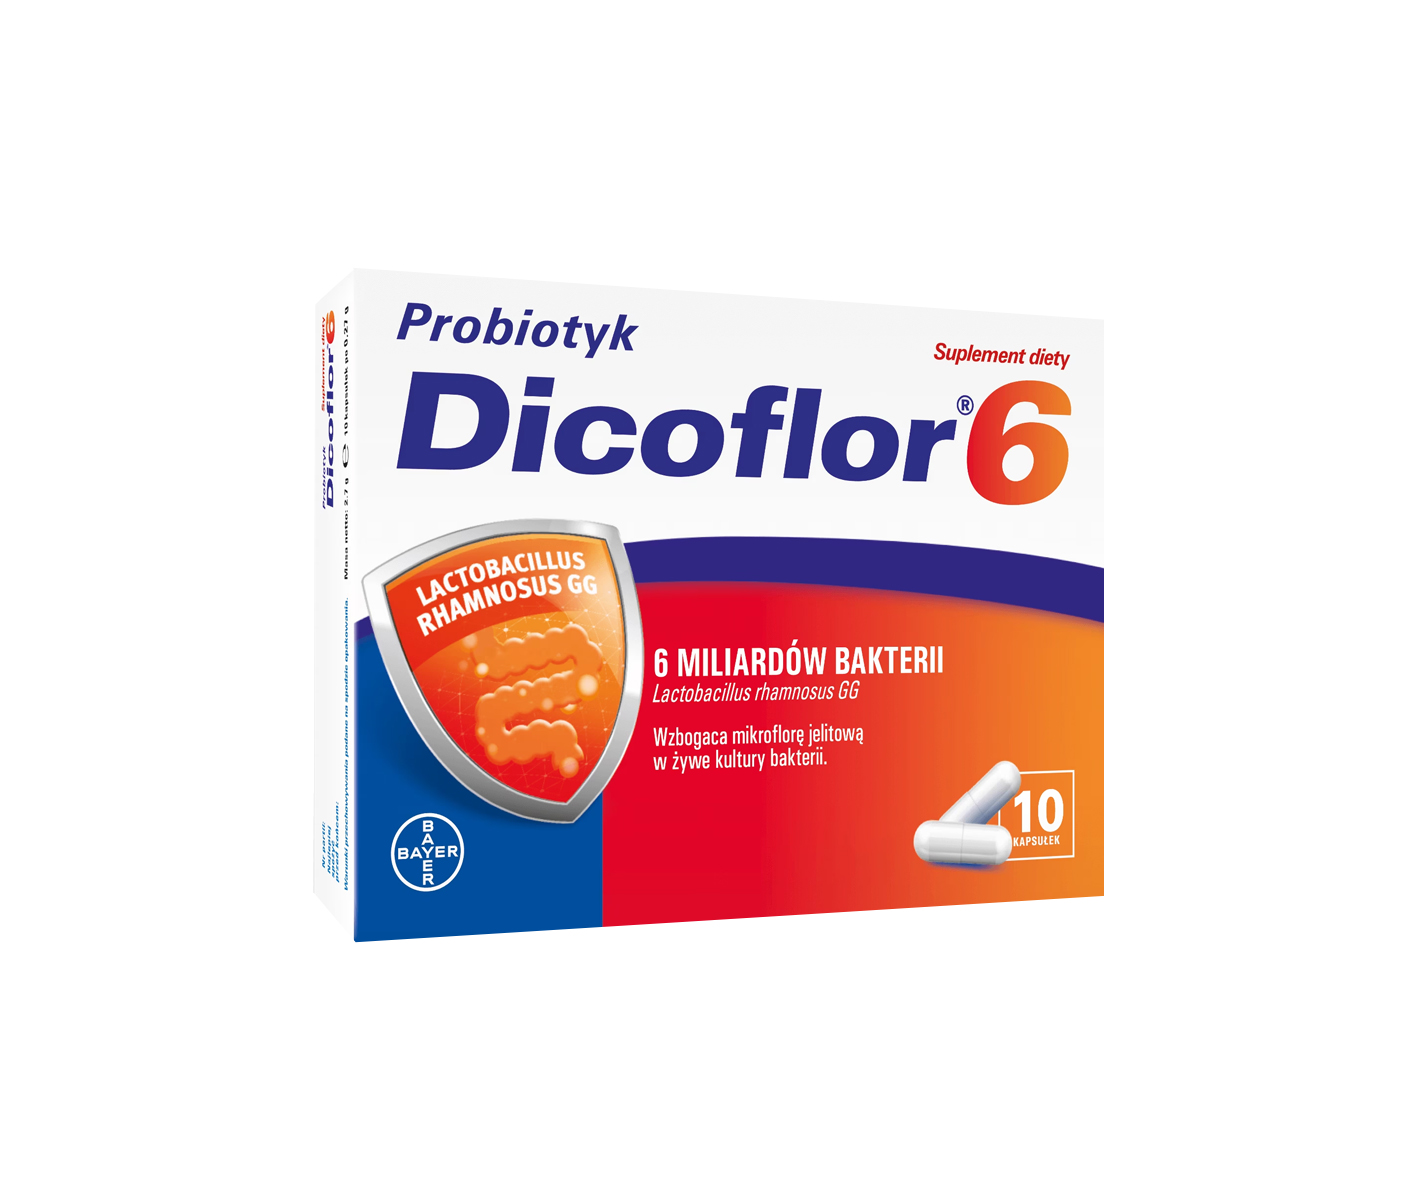 Dicoflor 6, probiotique